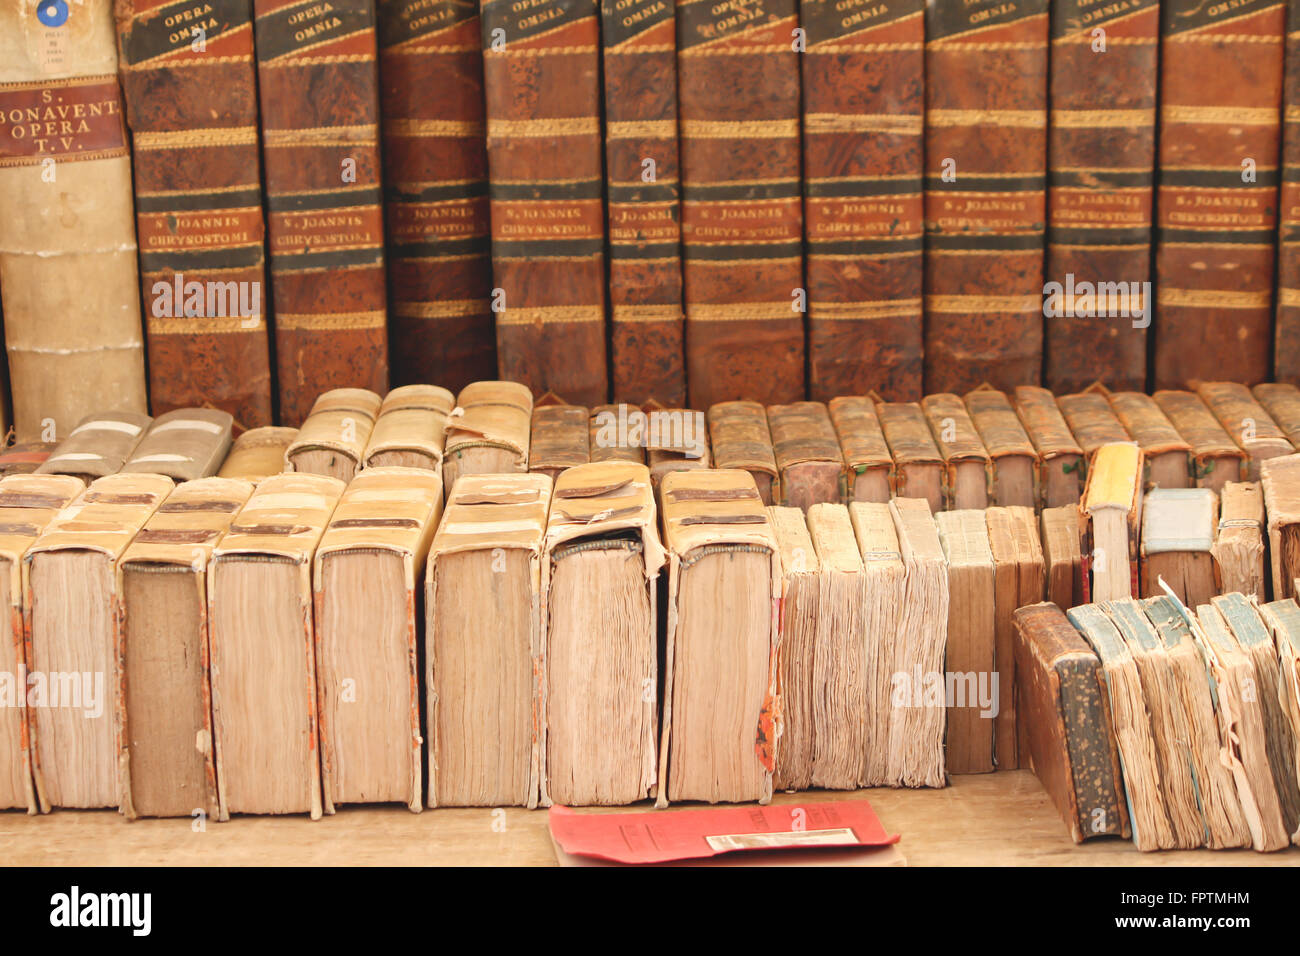 Très vieille encyclopédie canadienne dans un marché de rue Banque D'Images